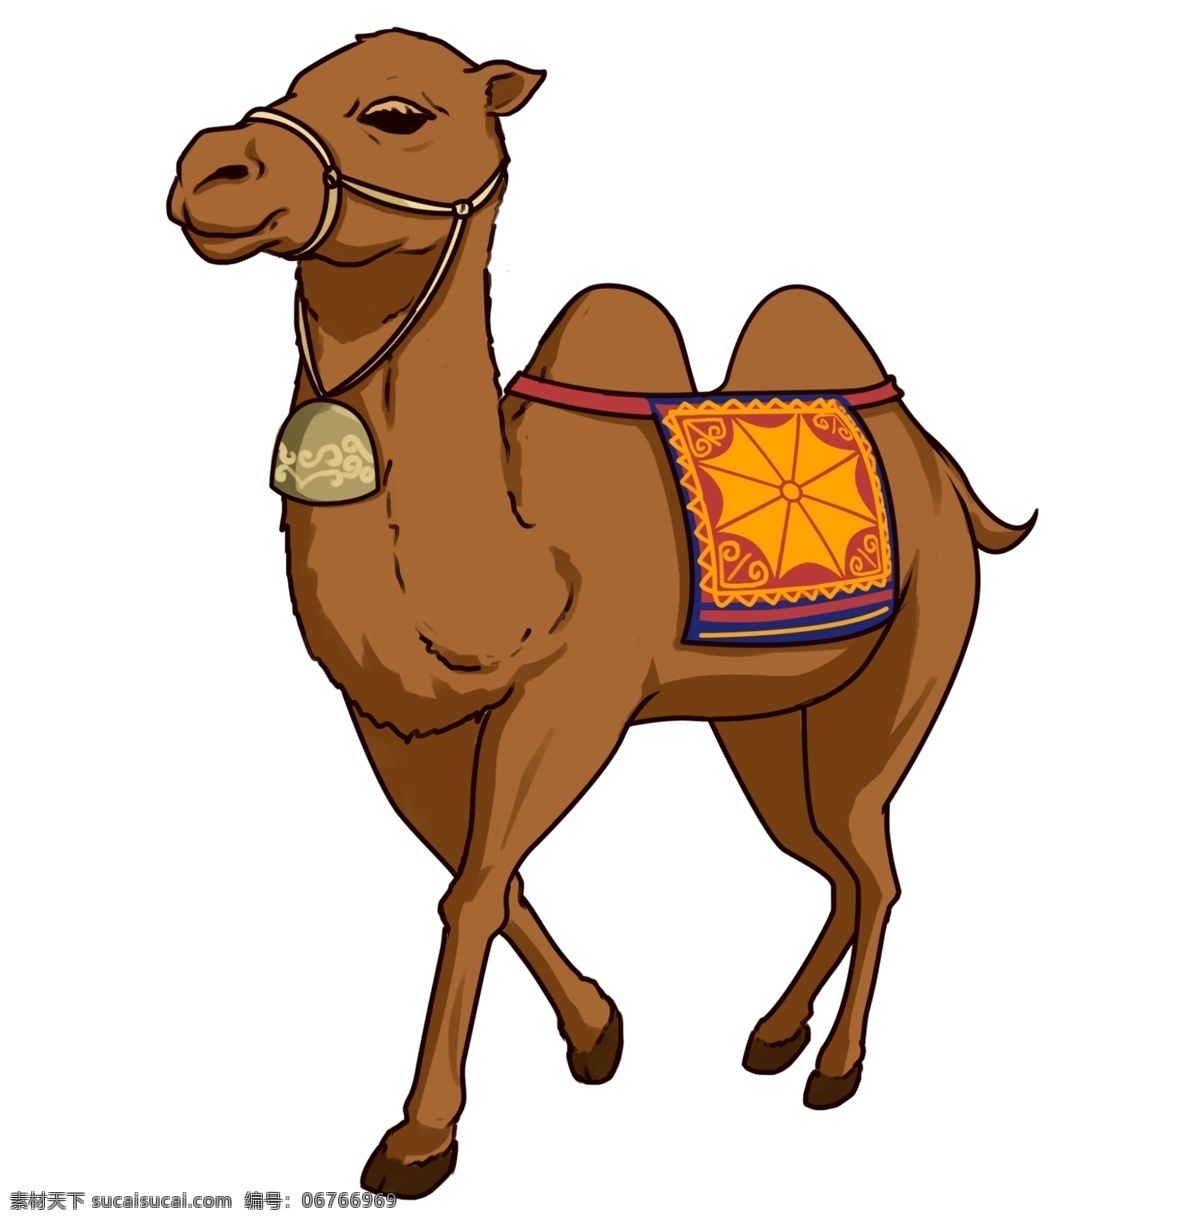 卡通 骆驼 素材图片 矢量骆驼 卡通骆驼 手绘骆驼 骆驼插画 骆驼插图 彩色骆驼 骆驼侧面 行走骆驼 动物 动漫动画